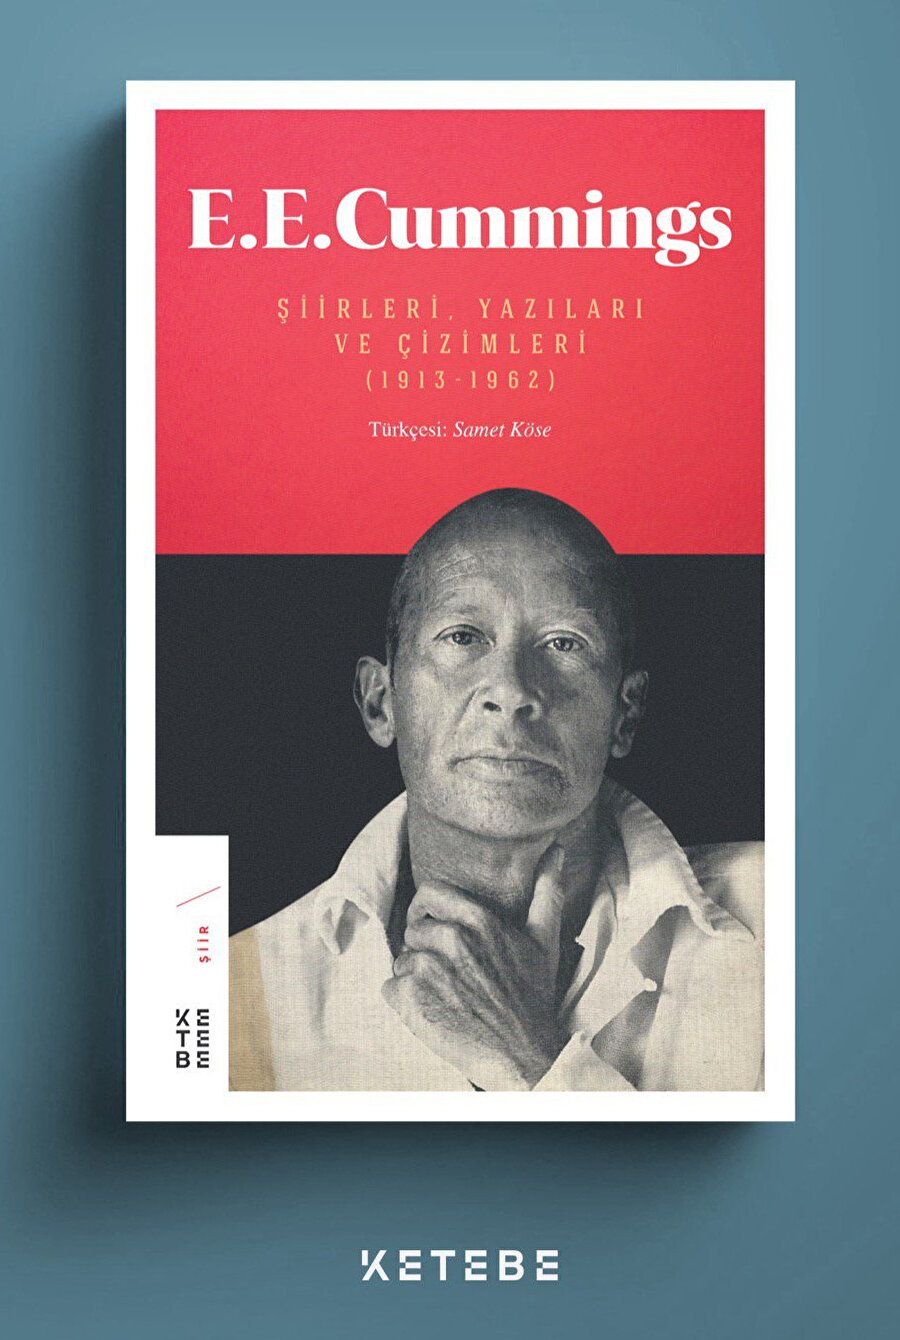 E.E Cummings’in 1913-1962 yıllarını kapsayan, Şiirleri, Yazıları ve Çizimleri alt başlığıyla okuyucuya duyurulan hacimli kitap, Ketebe Yayınları’ndan çıktı.